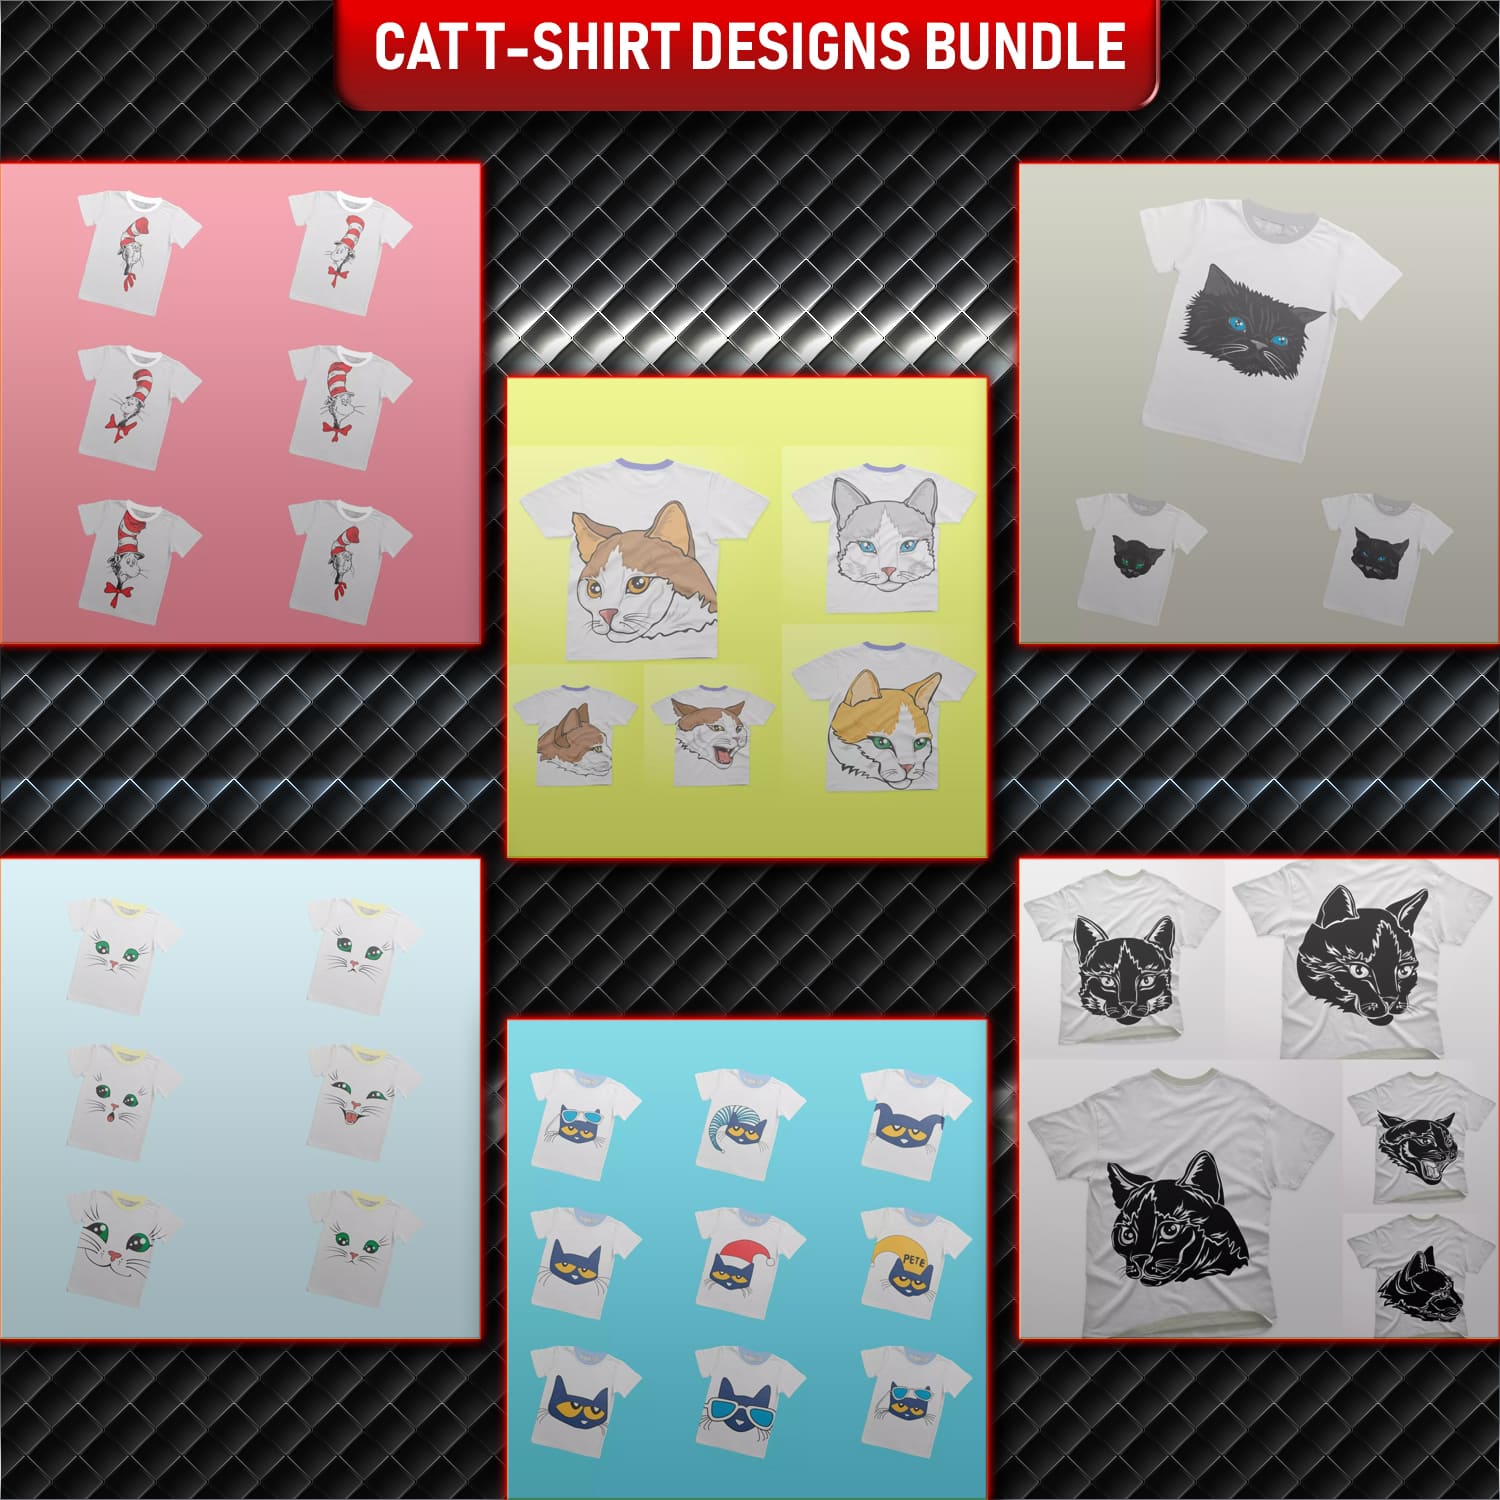 Preview cat t shirt designs bundle.